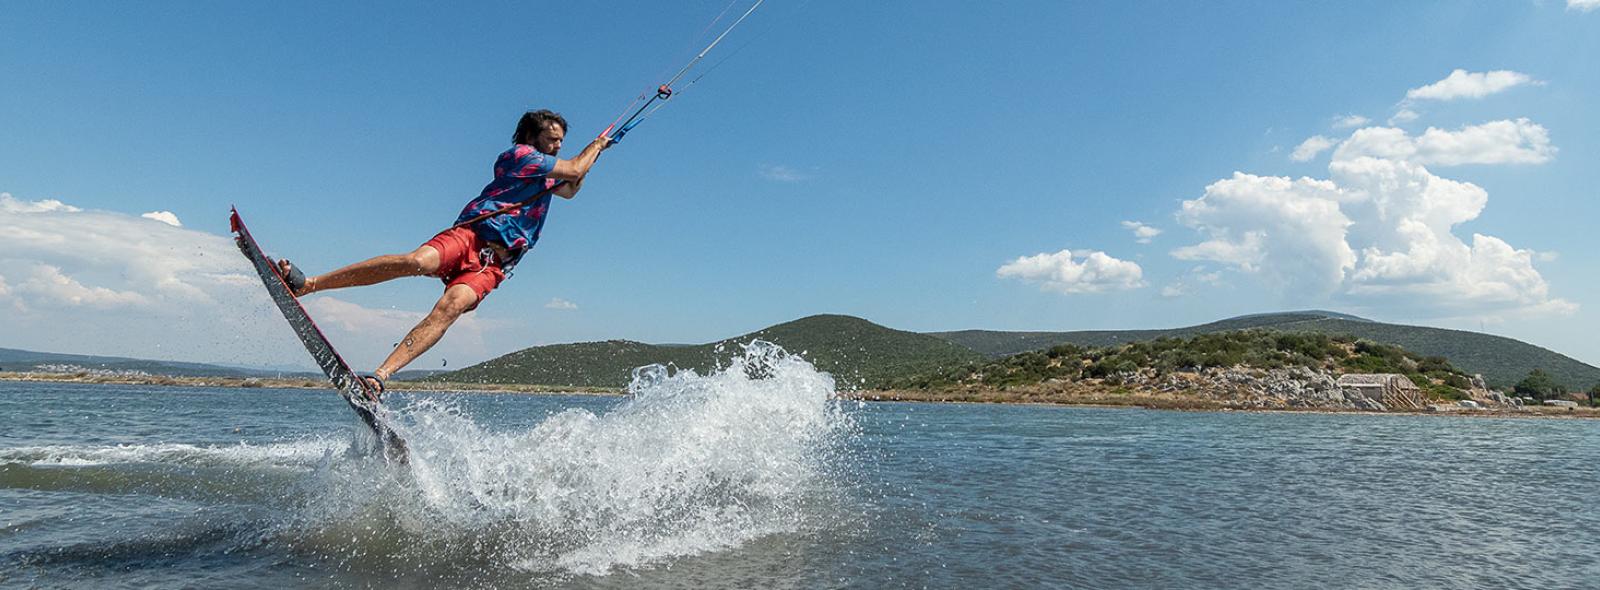 spot de kitesurf à Urla en Turquie avec un kiteur en action sur l'eau, un beau paysage avec des colines derrière et un ciel bleu